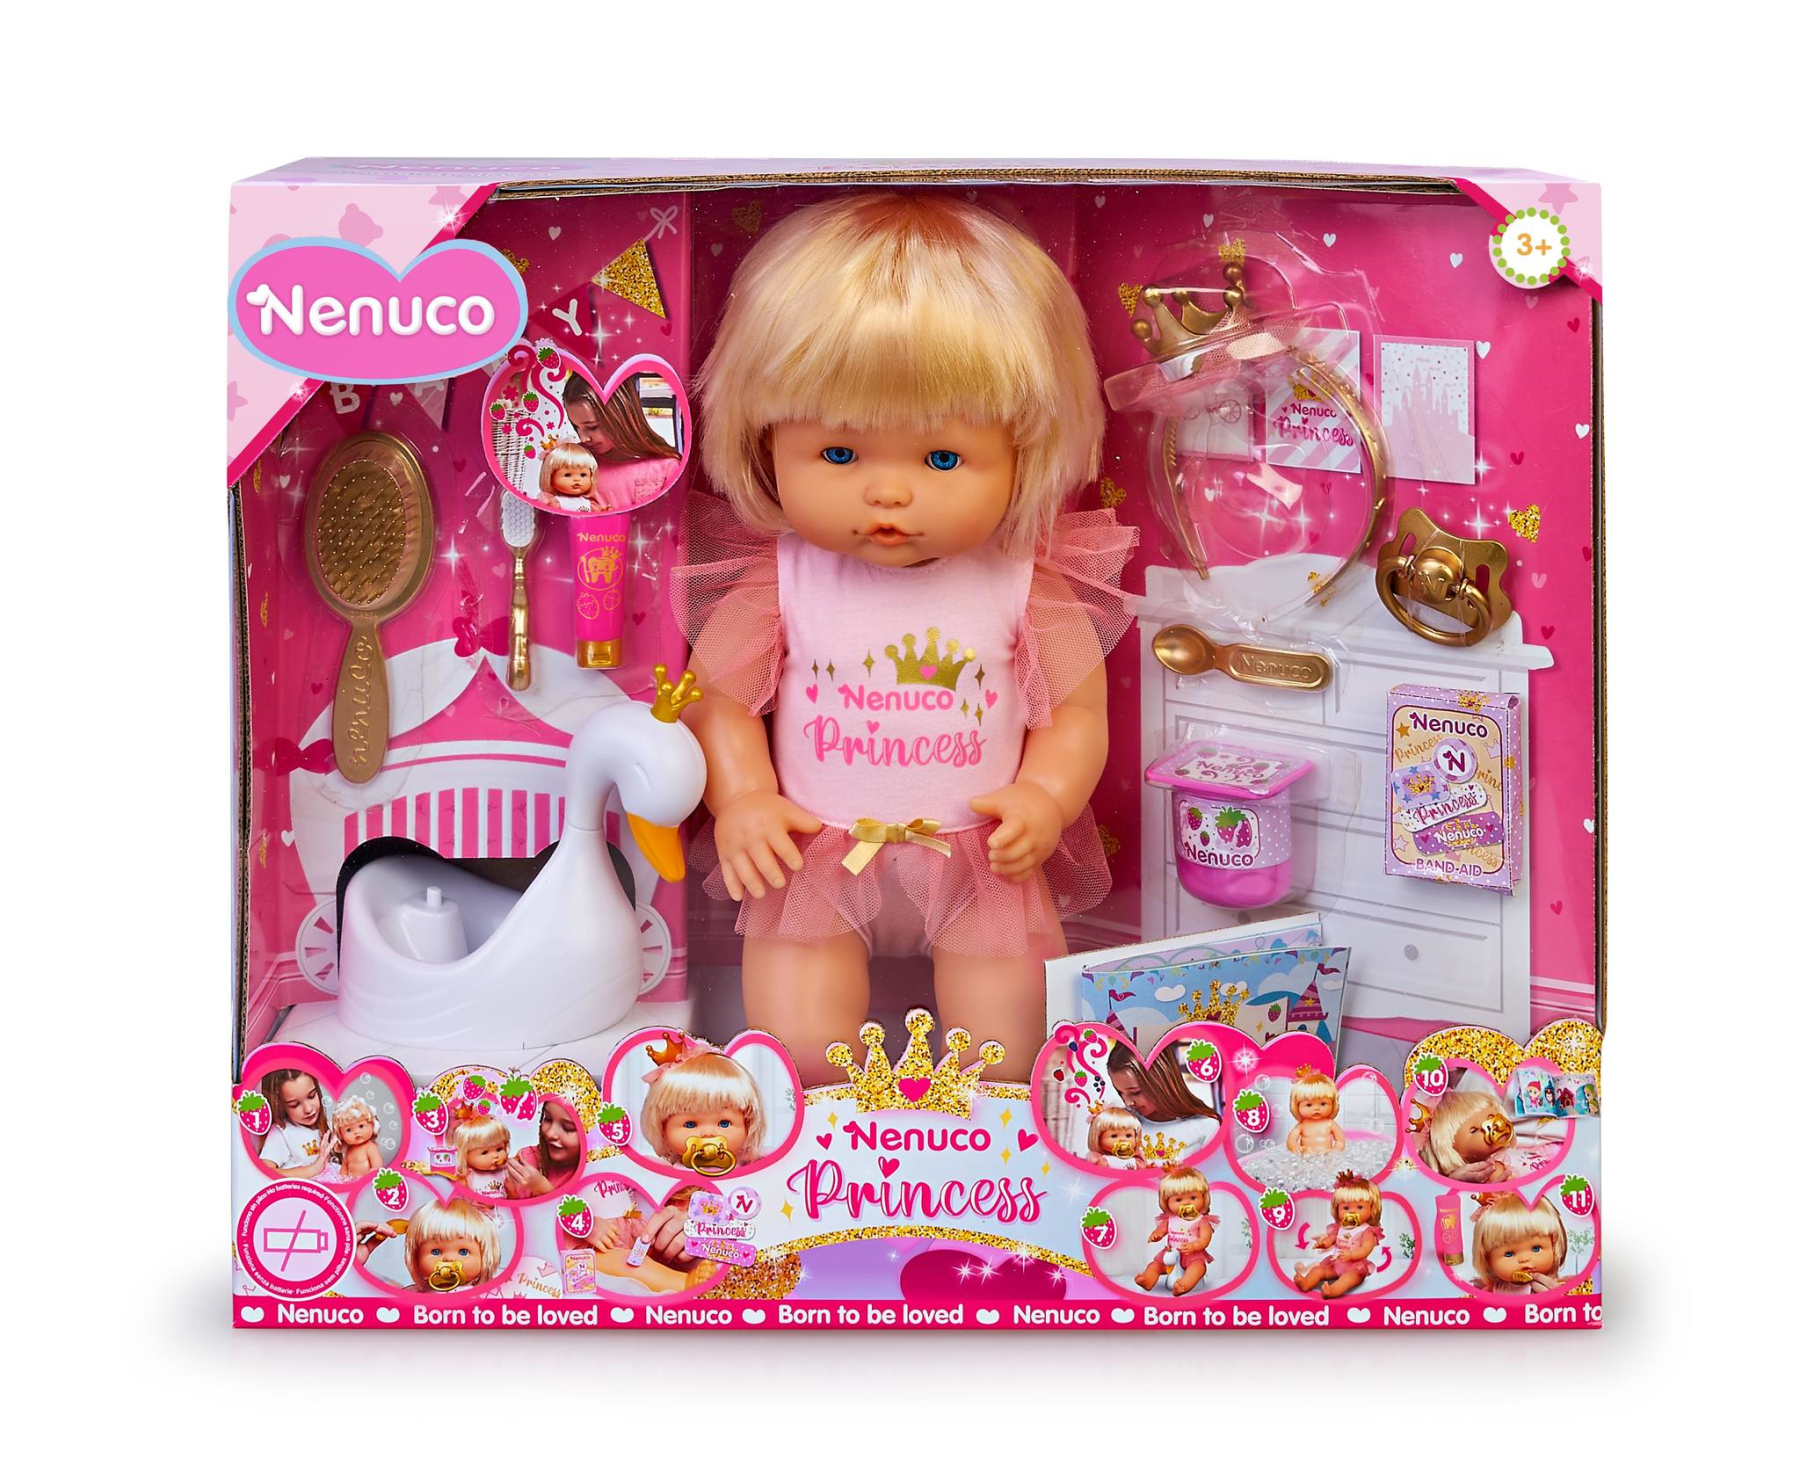 Nenuco princess, bambola 42 cm con capelli biondi e 10 accessori